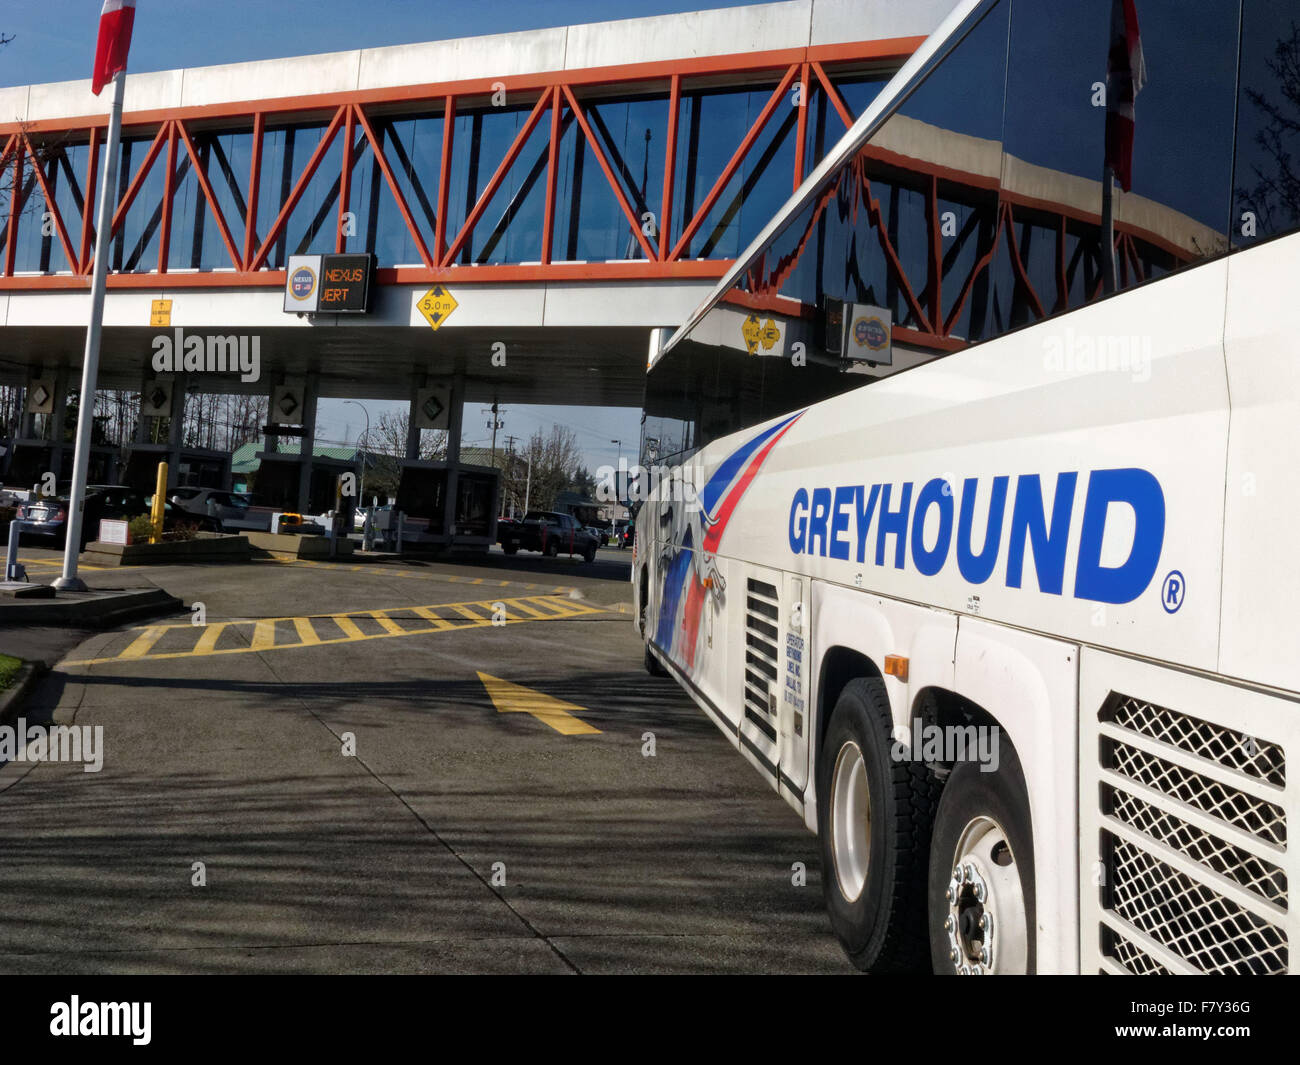 Einem Greyhound-Bus, die westliche Grenze von US-Bundesstaat Washington in den Vereinigten Staaten nach British Columbia in Kanada überqueren. Phot Stockfoto